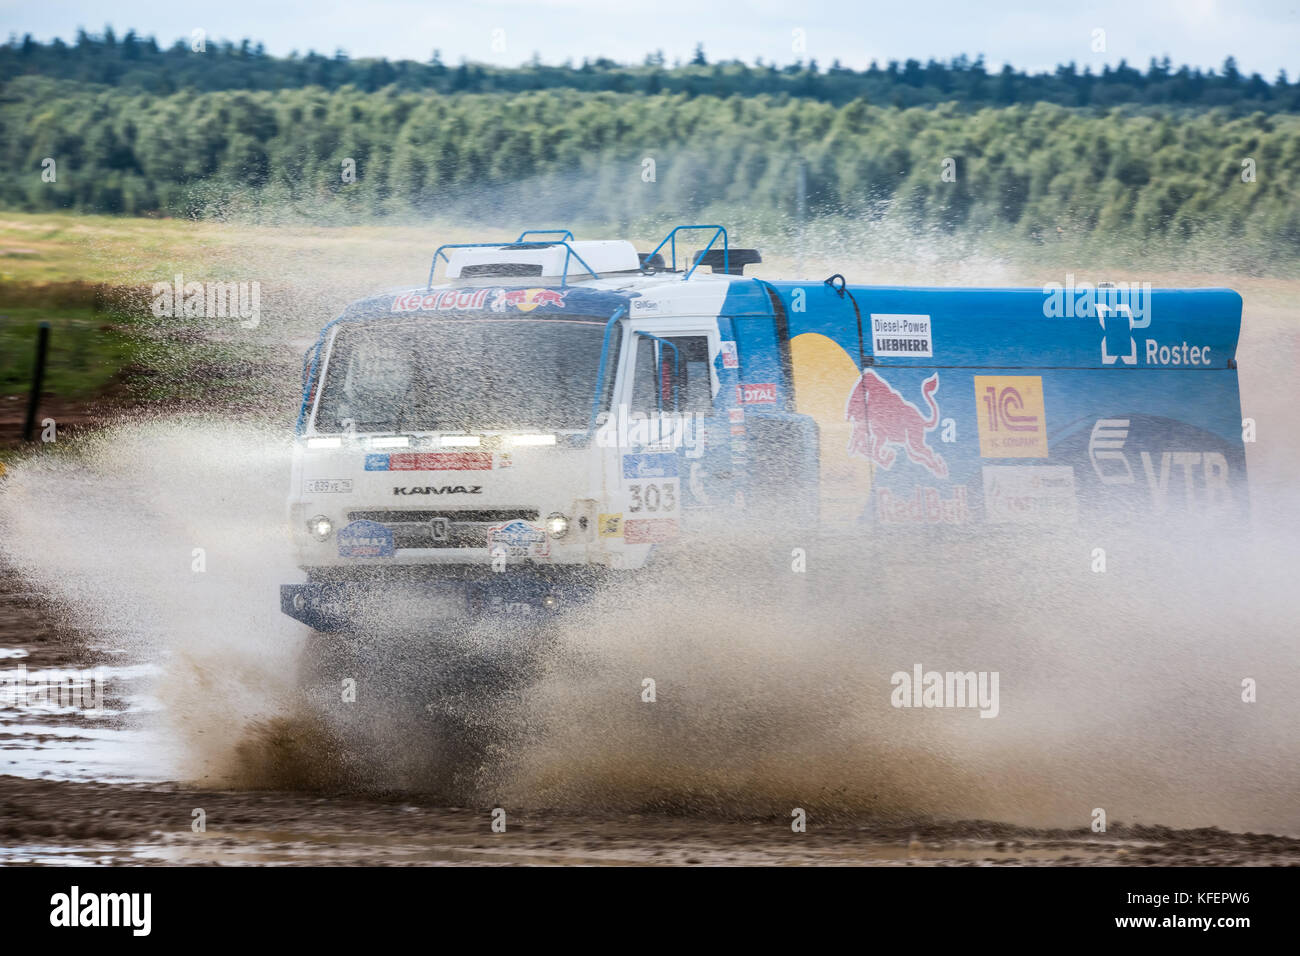 Moskau, Russland - August 2017: Leistung Der kamaz-master Team Truck auf internationale militärische Forum in der Region Moskau, Russland Stockfoto